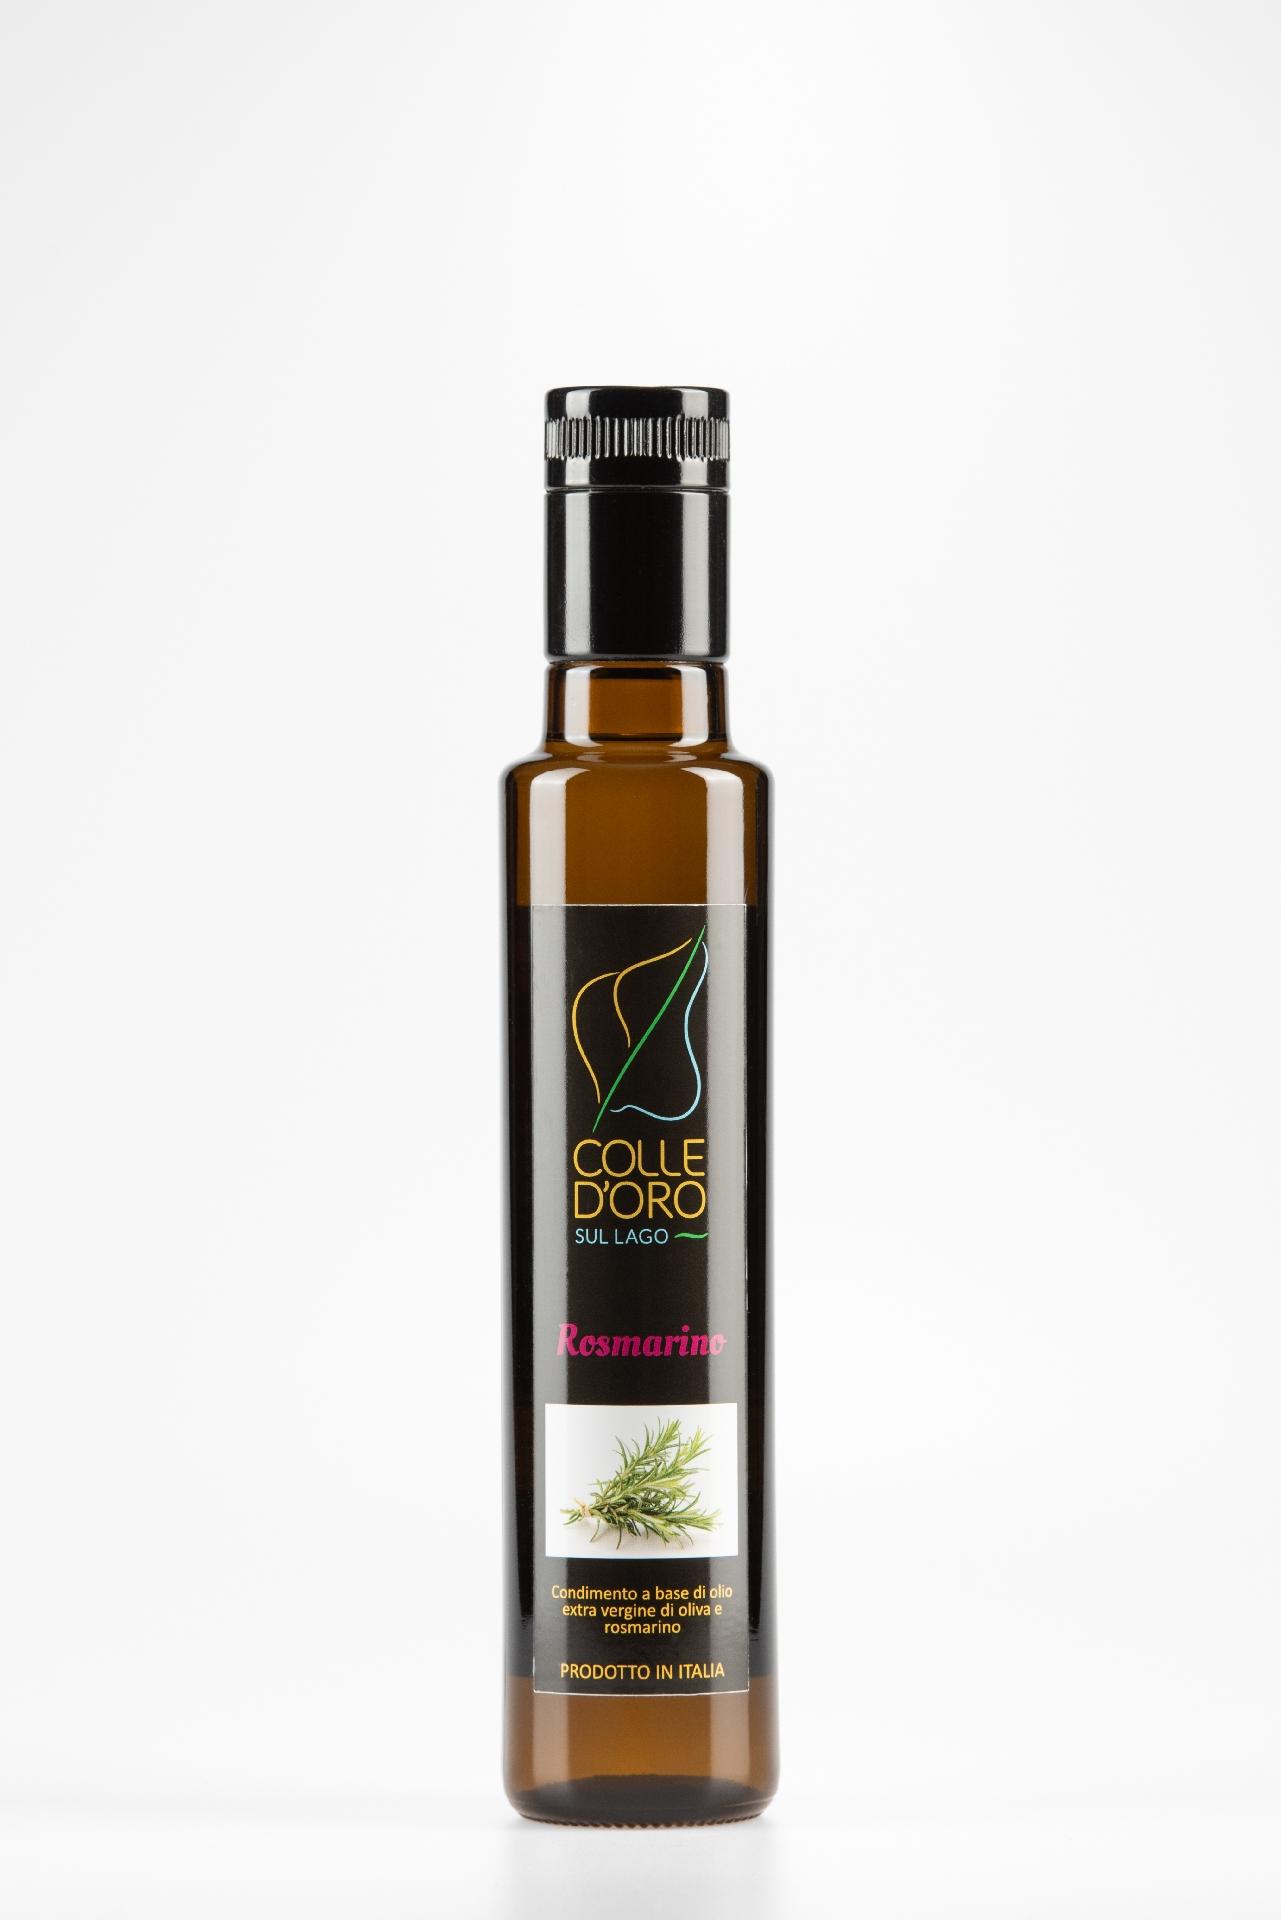 Cod. 09 Condimento a base di olio extra vergine di oliva (92%) e rosmarino (8%)